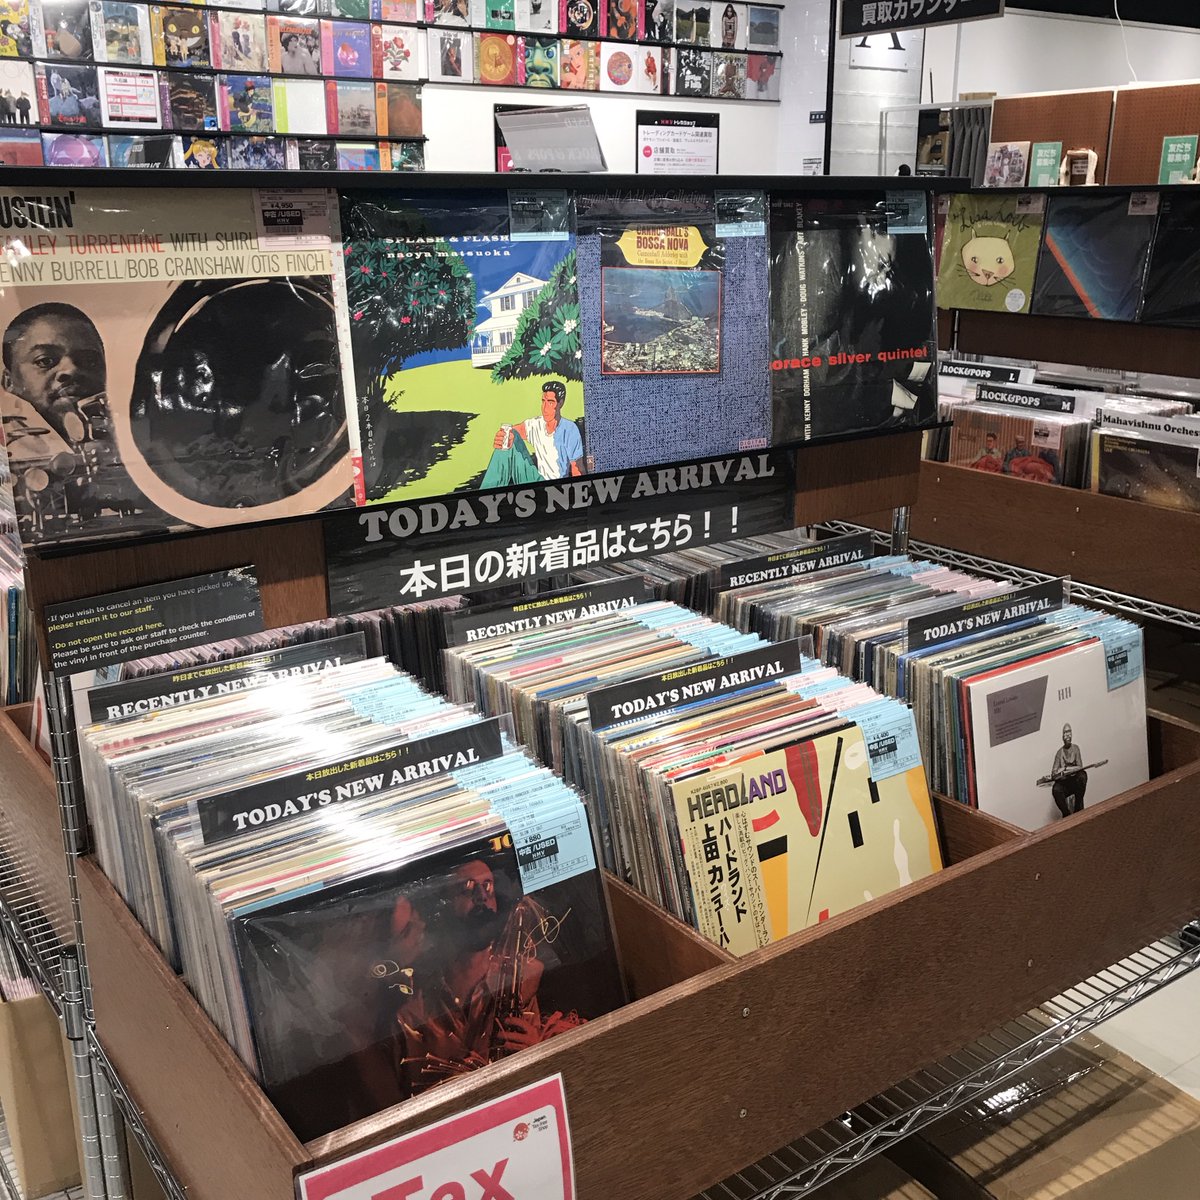 おはようございます！
本日の新着レコードはJAZZを中心に80枚ほど放出しました！
本日も21時まで営業中！
荒天ではございますが、ご来店お待ちしております！
出品リスト
⇒hmv.co.jp/fl/433/2/19/
#Osaka #vinylshop #vinylrecords #recordstore #アナログ #レコード #Shinsaibashi 
#vinyl